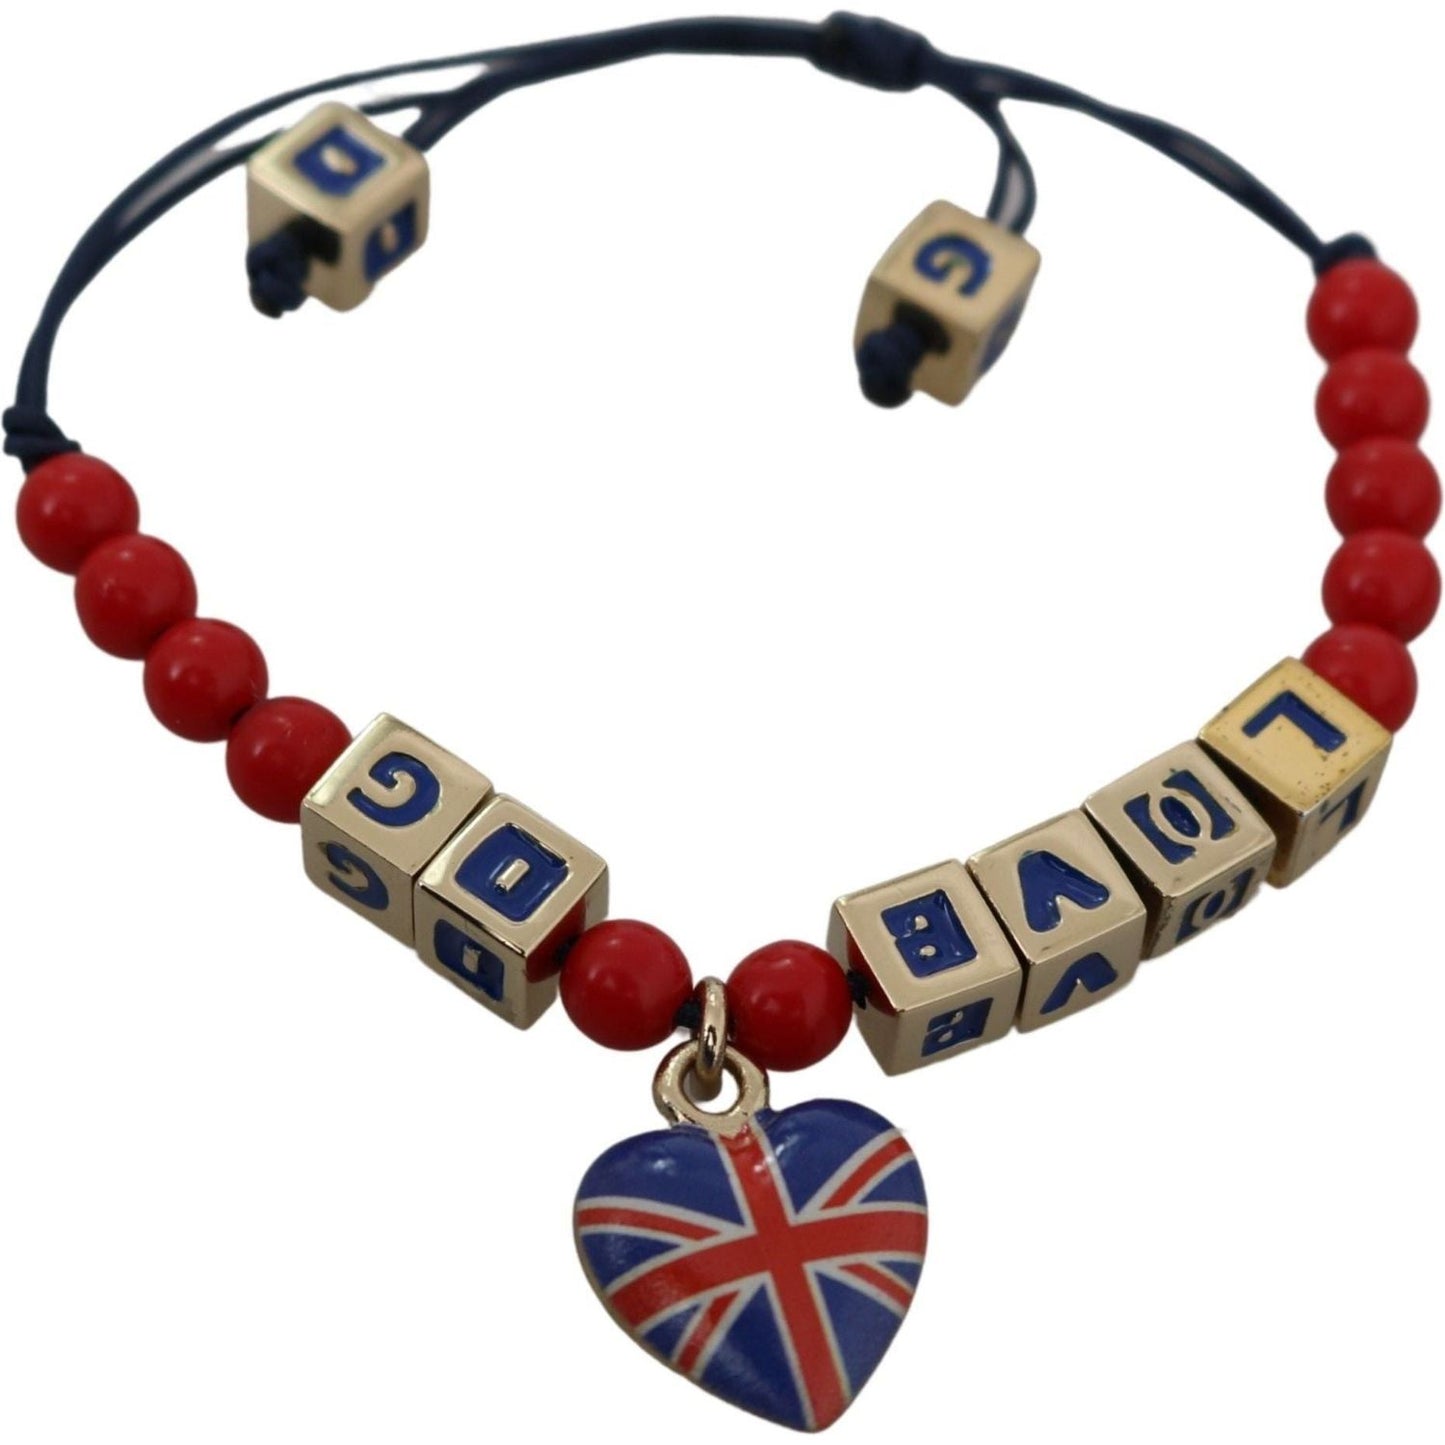 Dolce & Gabbana Elegant Blue Red Glass Cotton Blend Bracelet Bracelet red-blue-beaded-dg-loves-london-flag-branded-bracelet